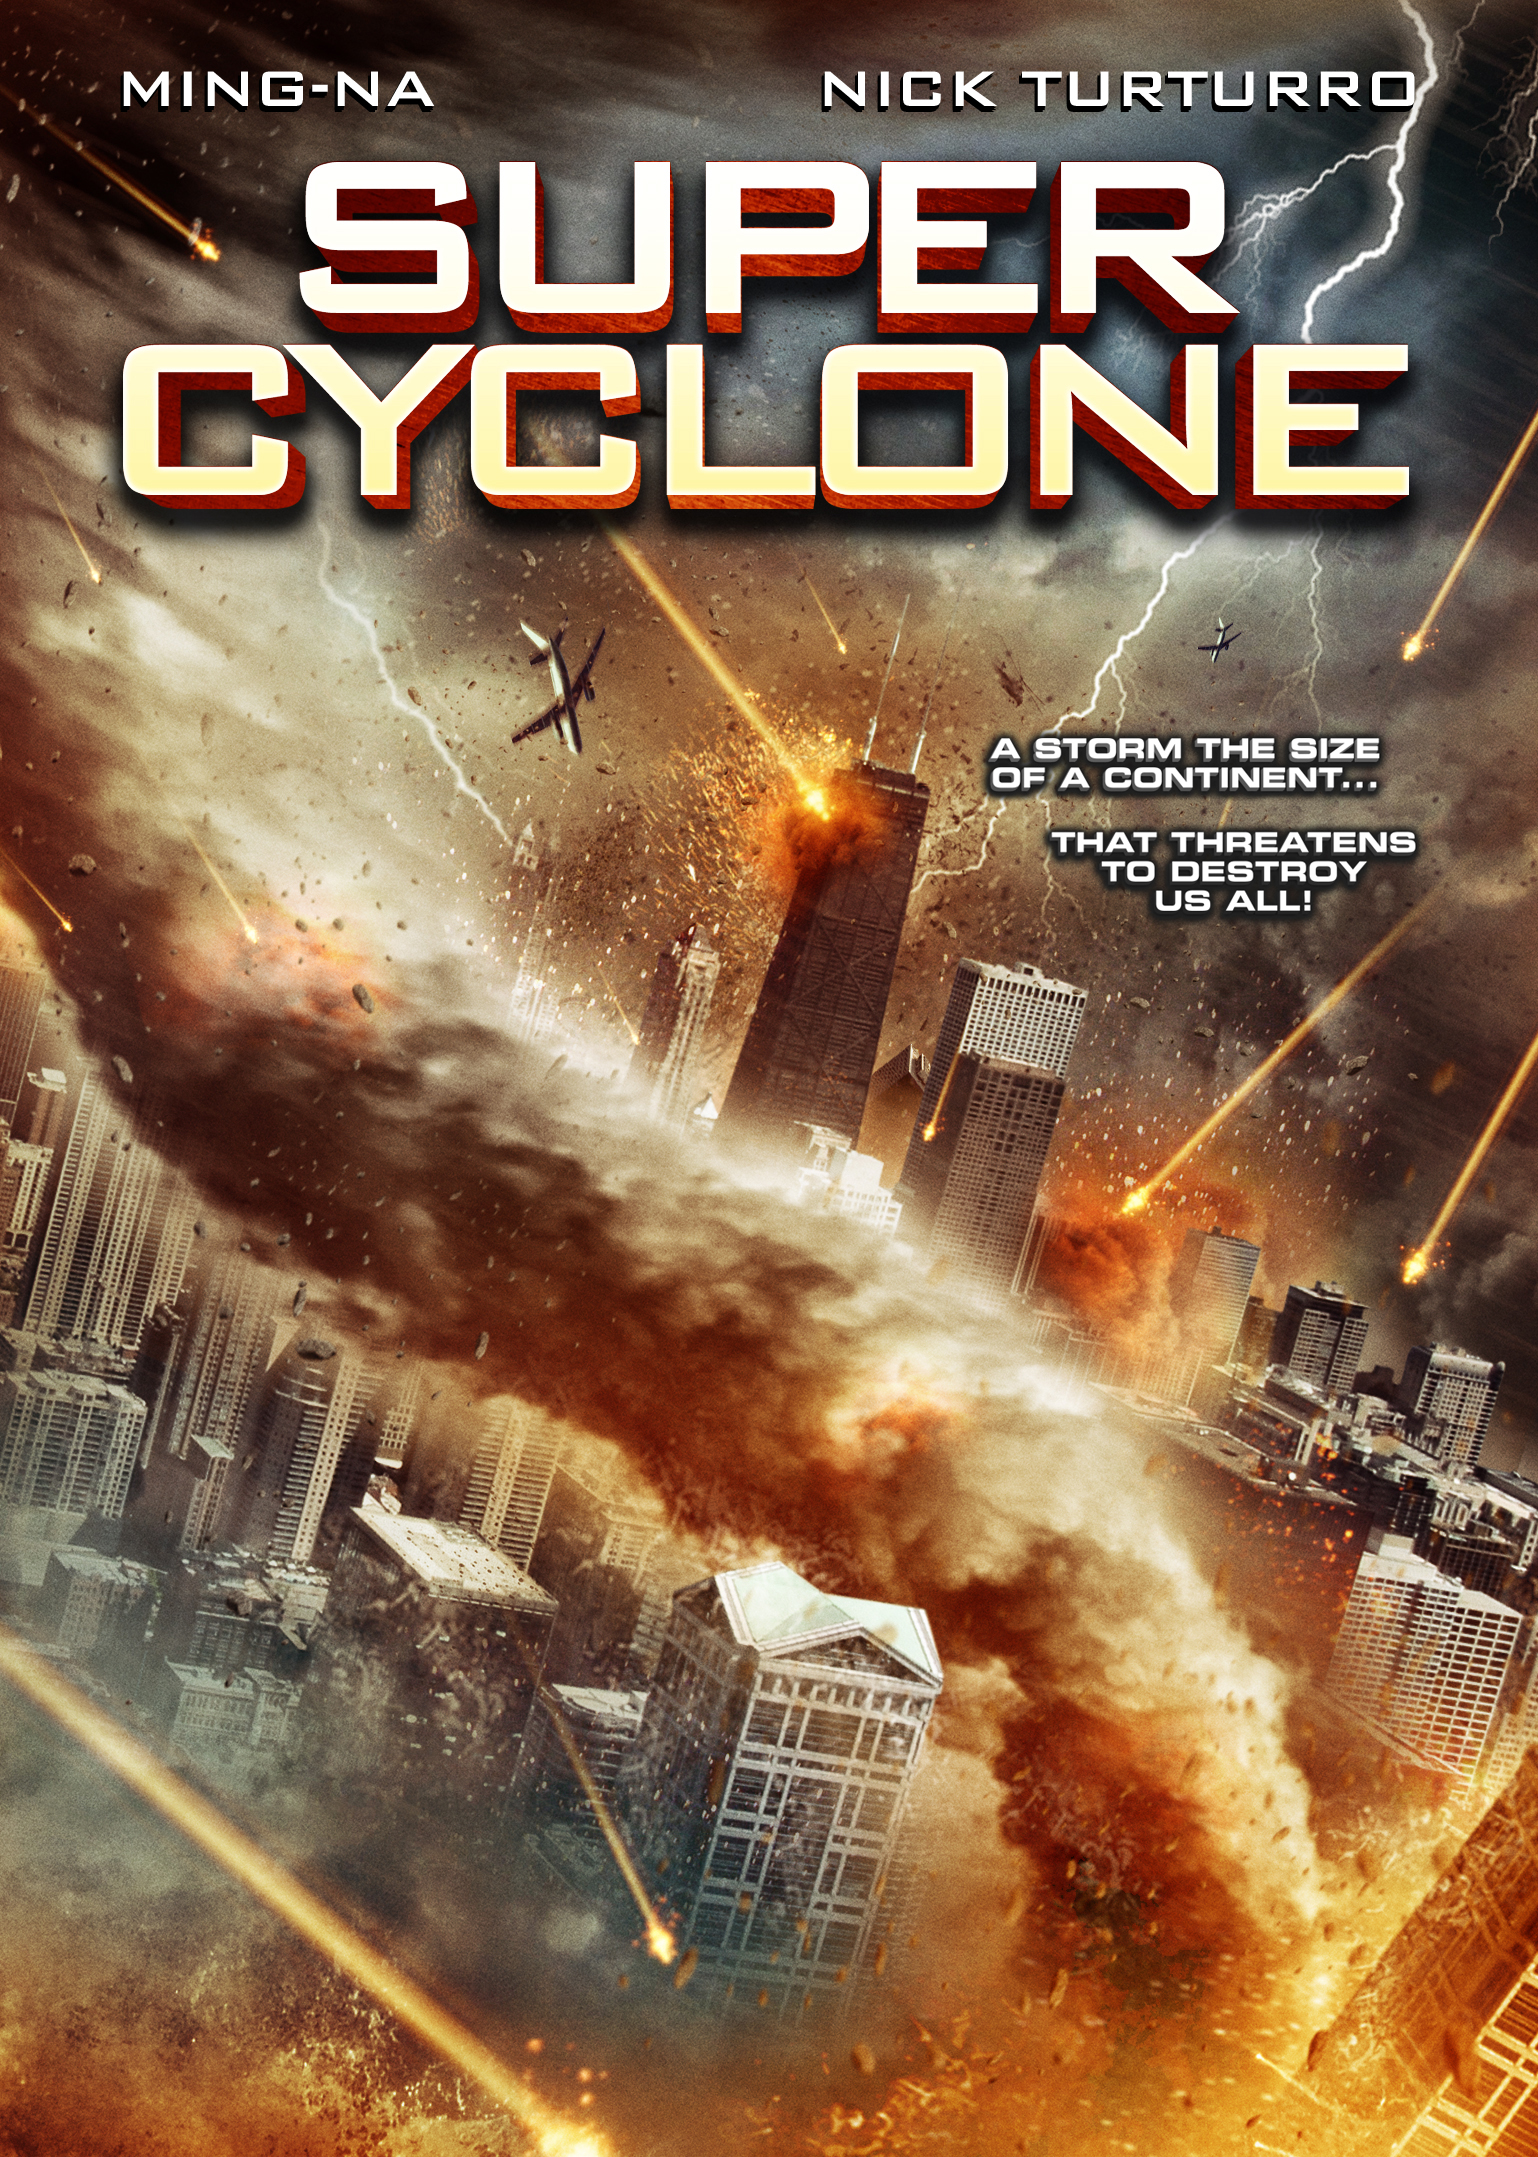 Super Cyclone (2012) Screenshot 1